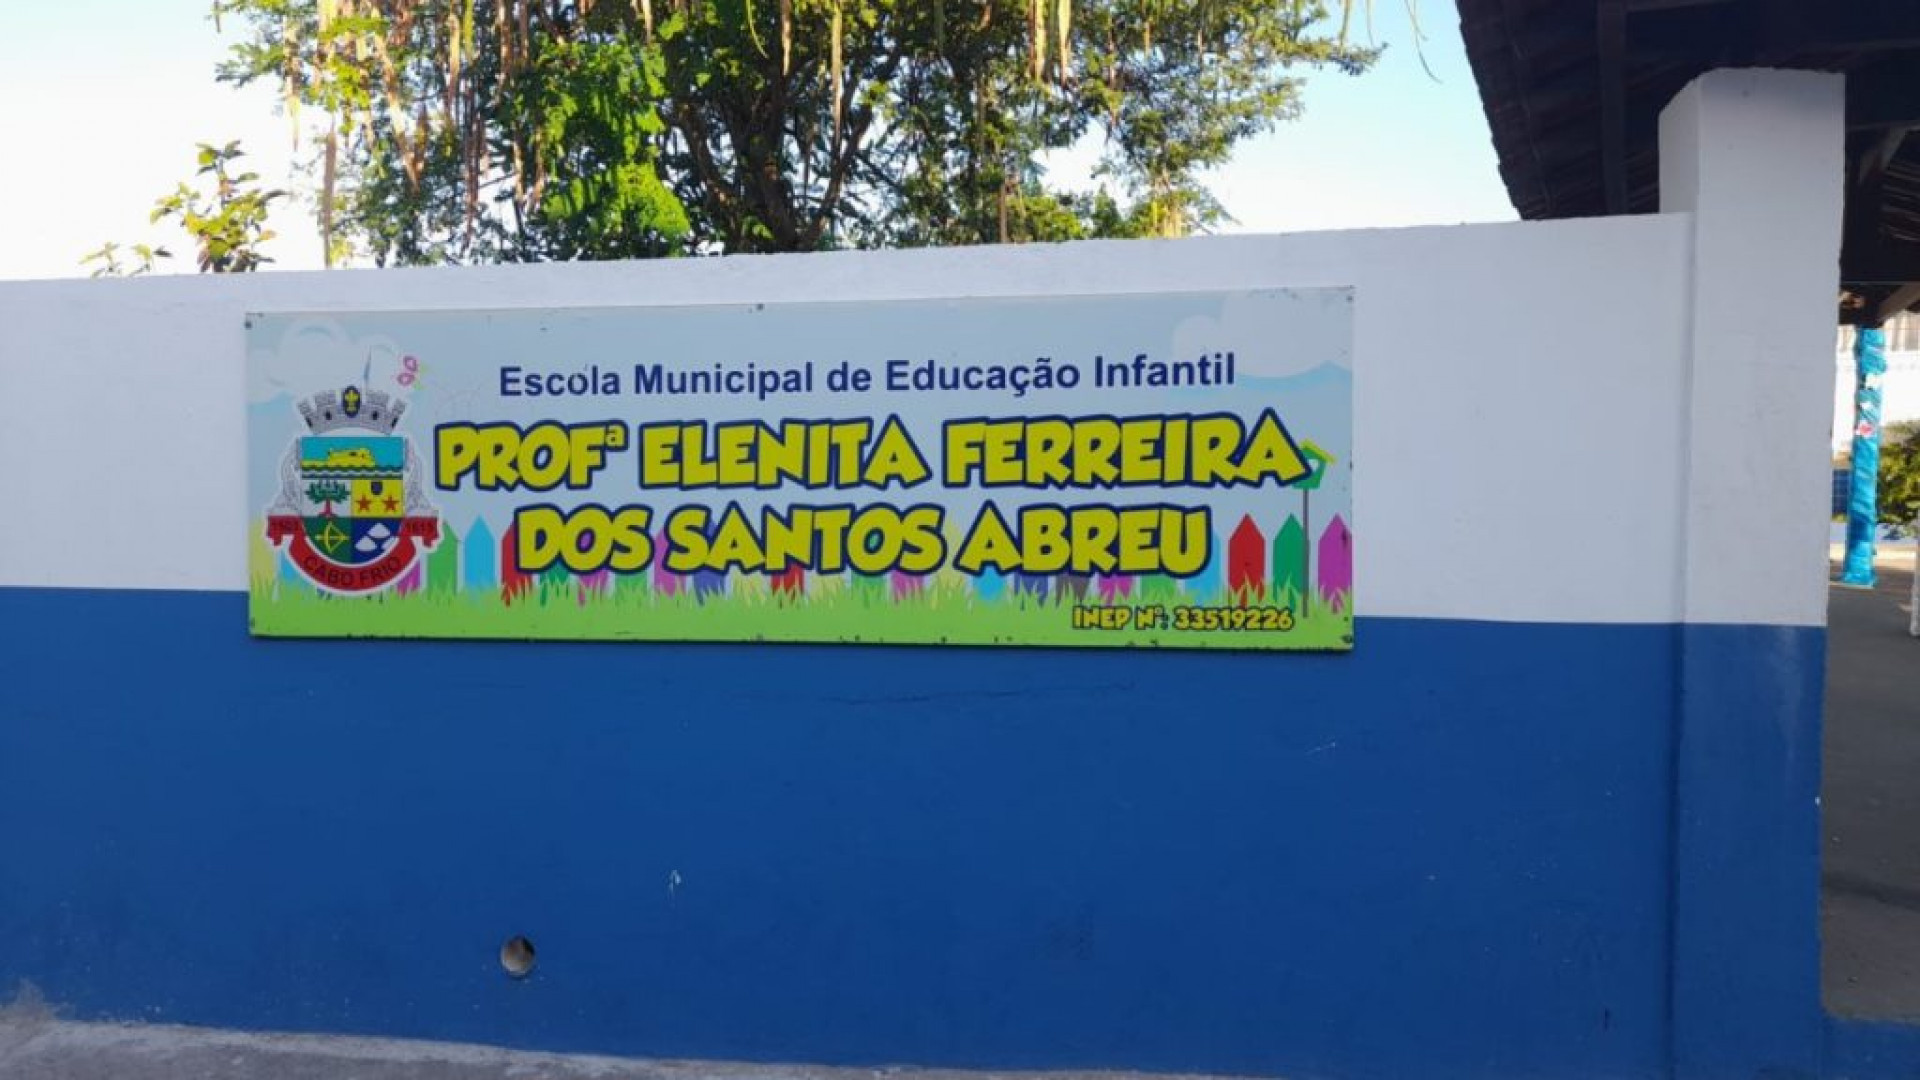 Escola Municipal de Educação Infantil Professora Elenita Ferreira dos Santos Abreu - Divulgação 